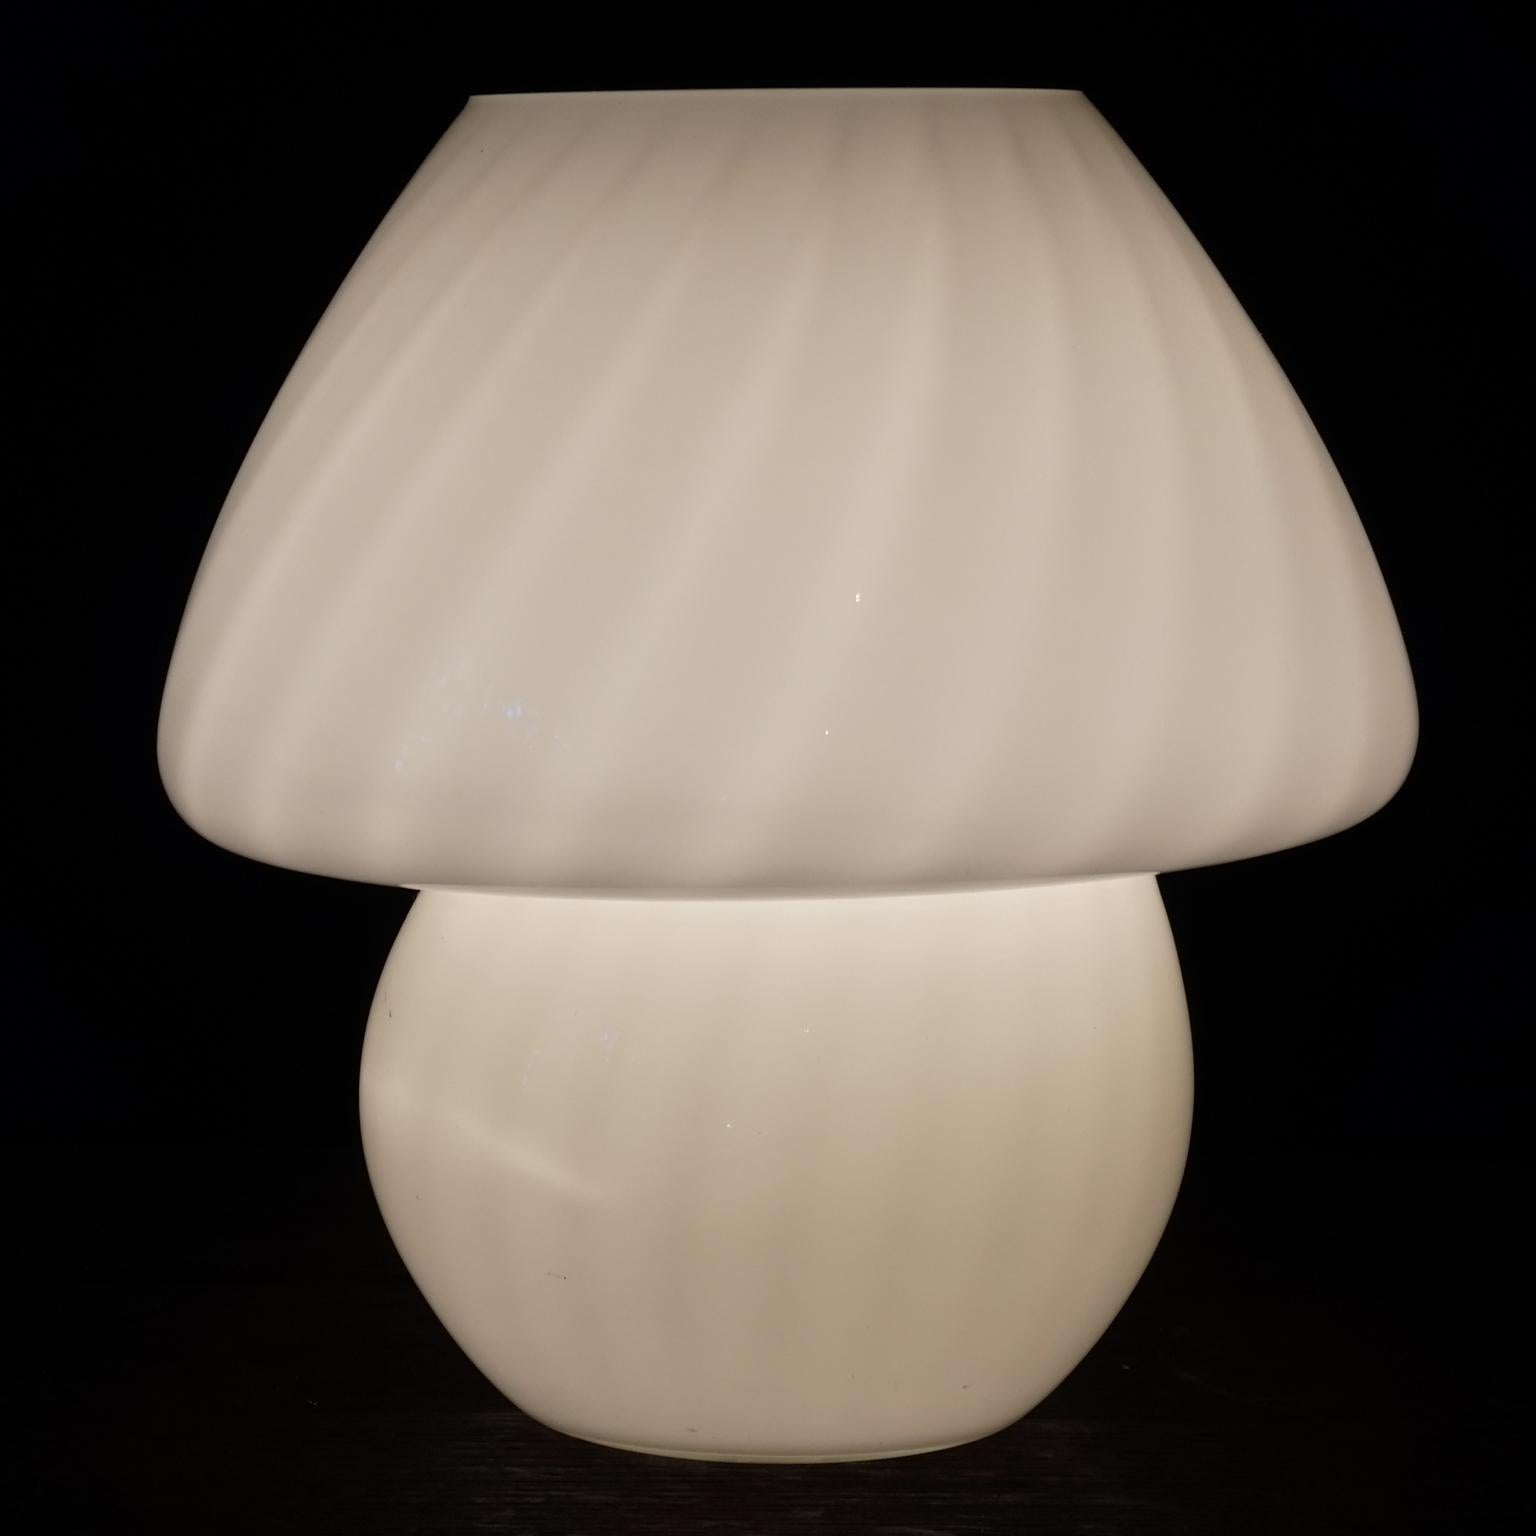 Three 1980s Italian Medium Murano White Glass Swirl Mushroom and Egg Lamps For Sale 2